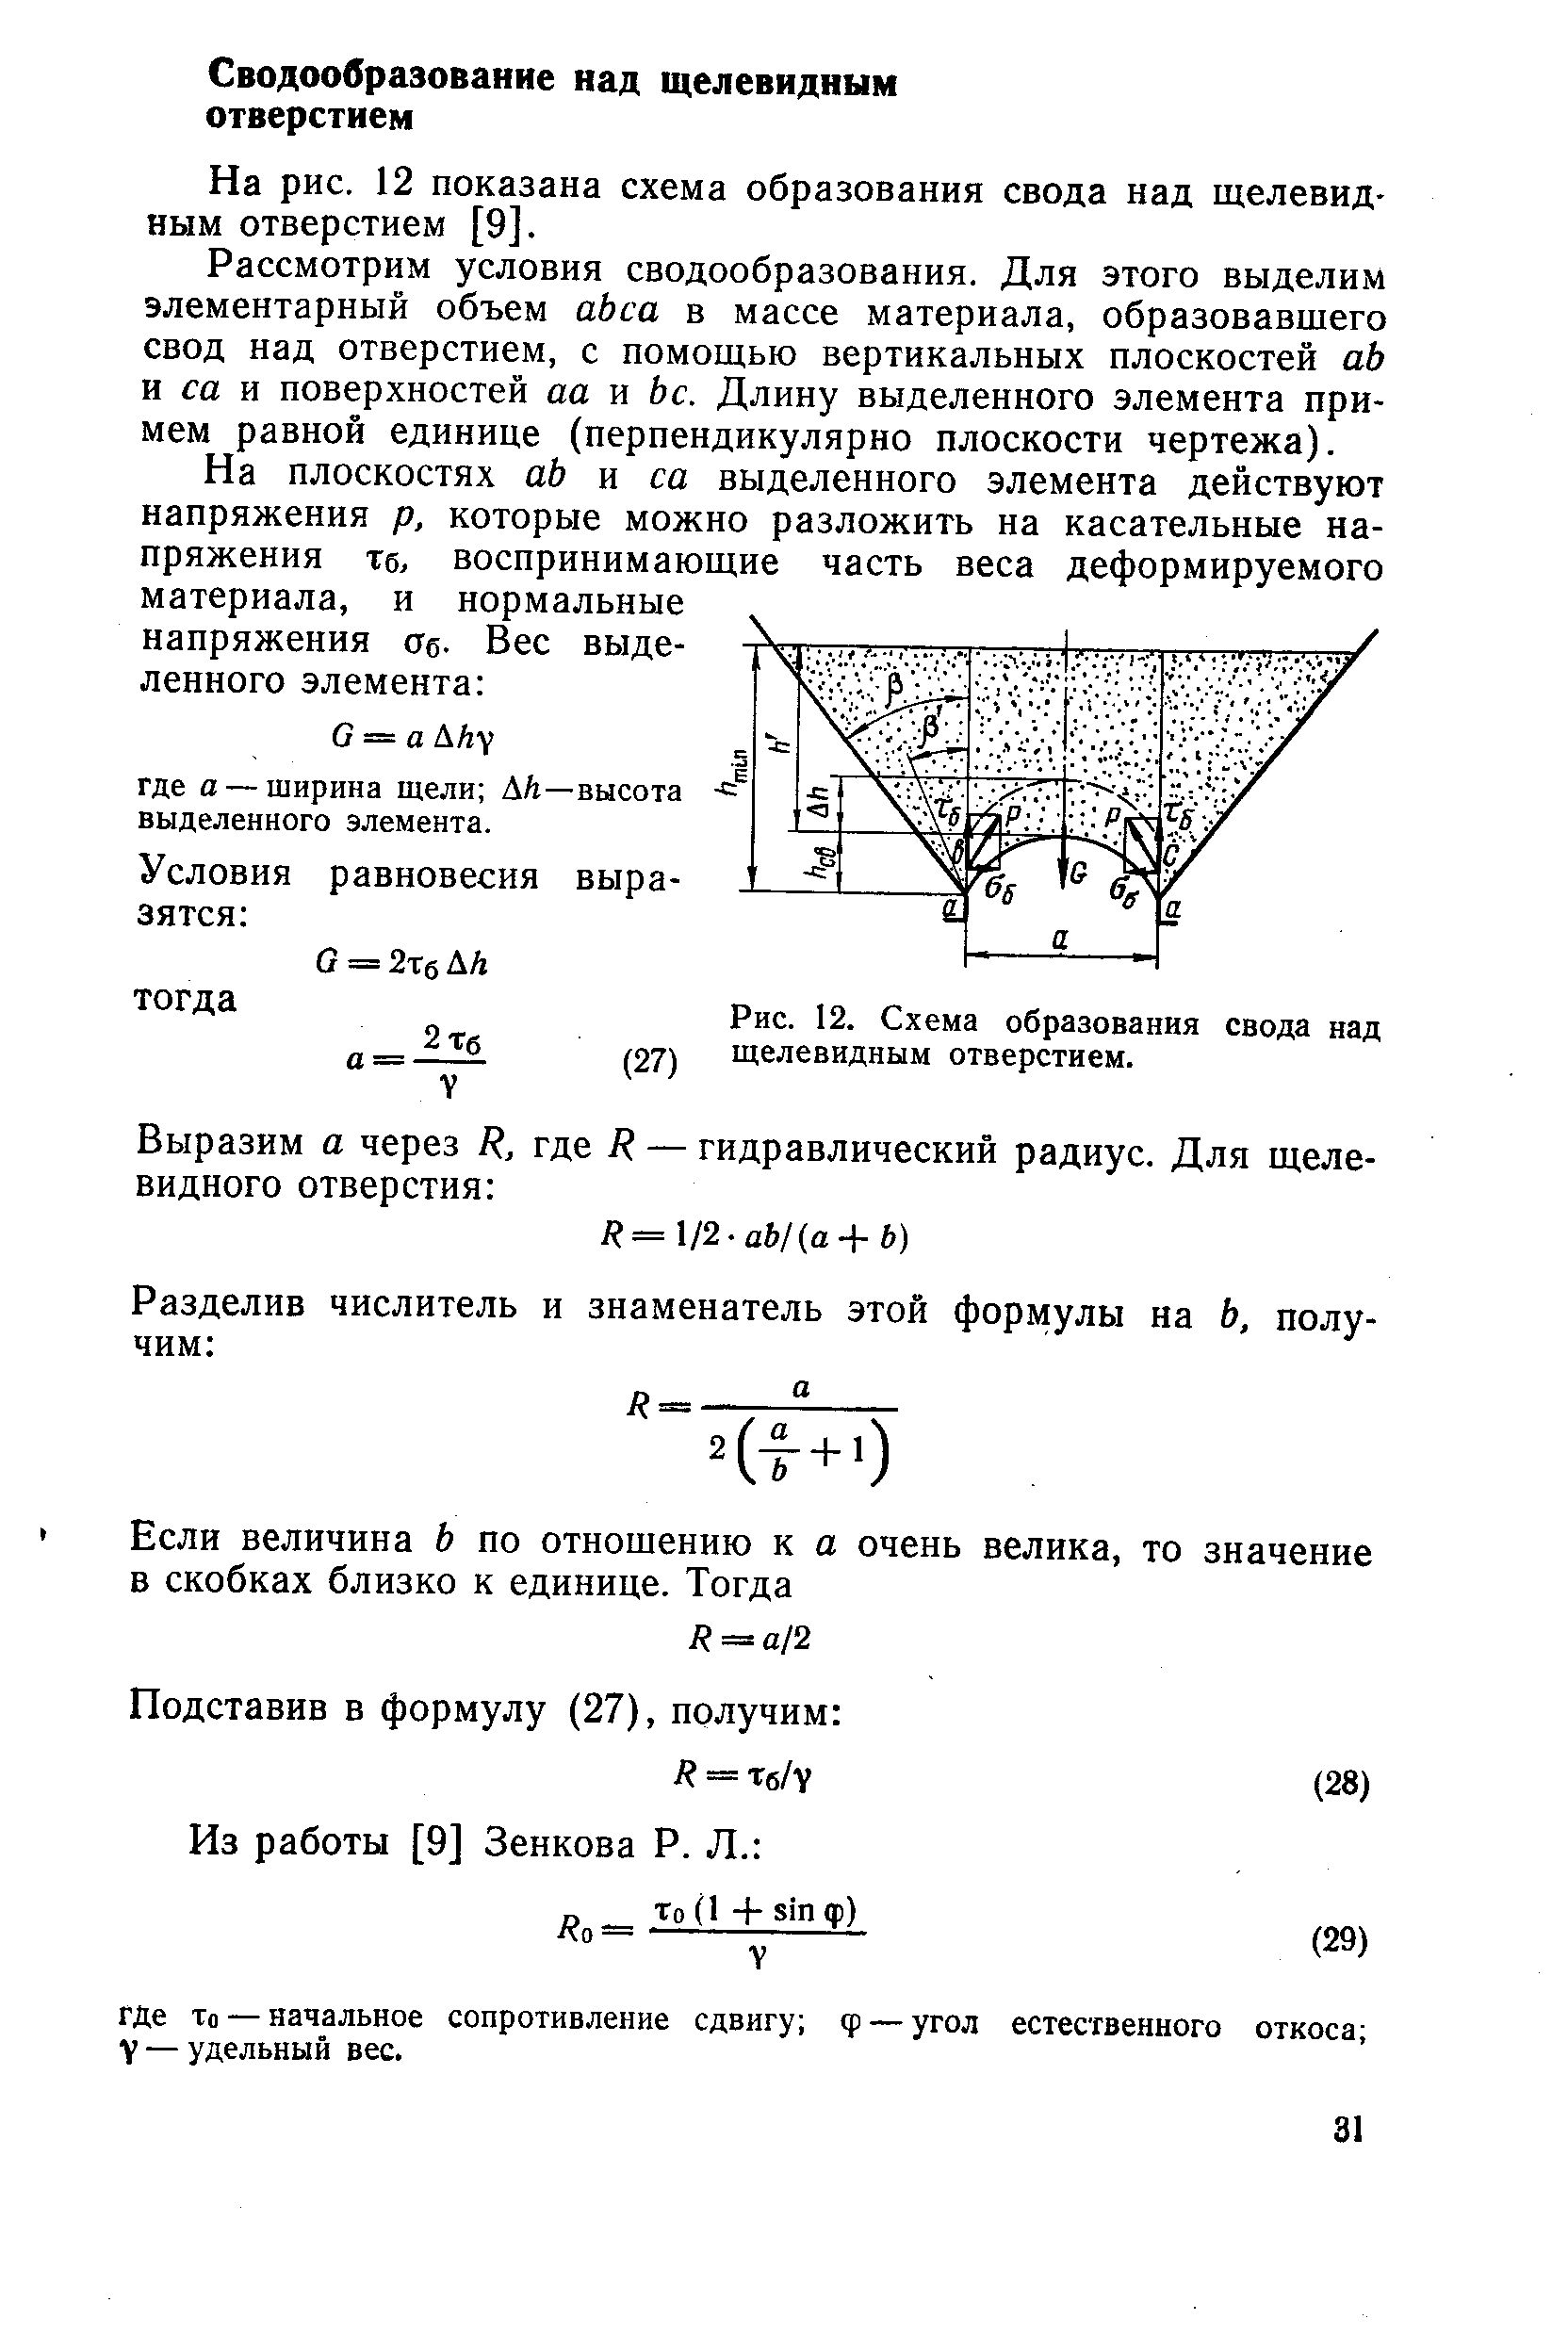 На рис. 12 показана схема образования свода над щелевидным отверстием [9].